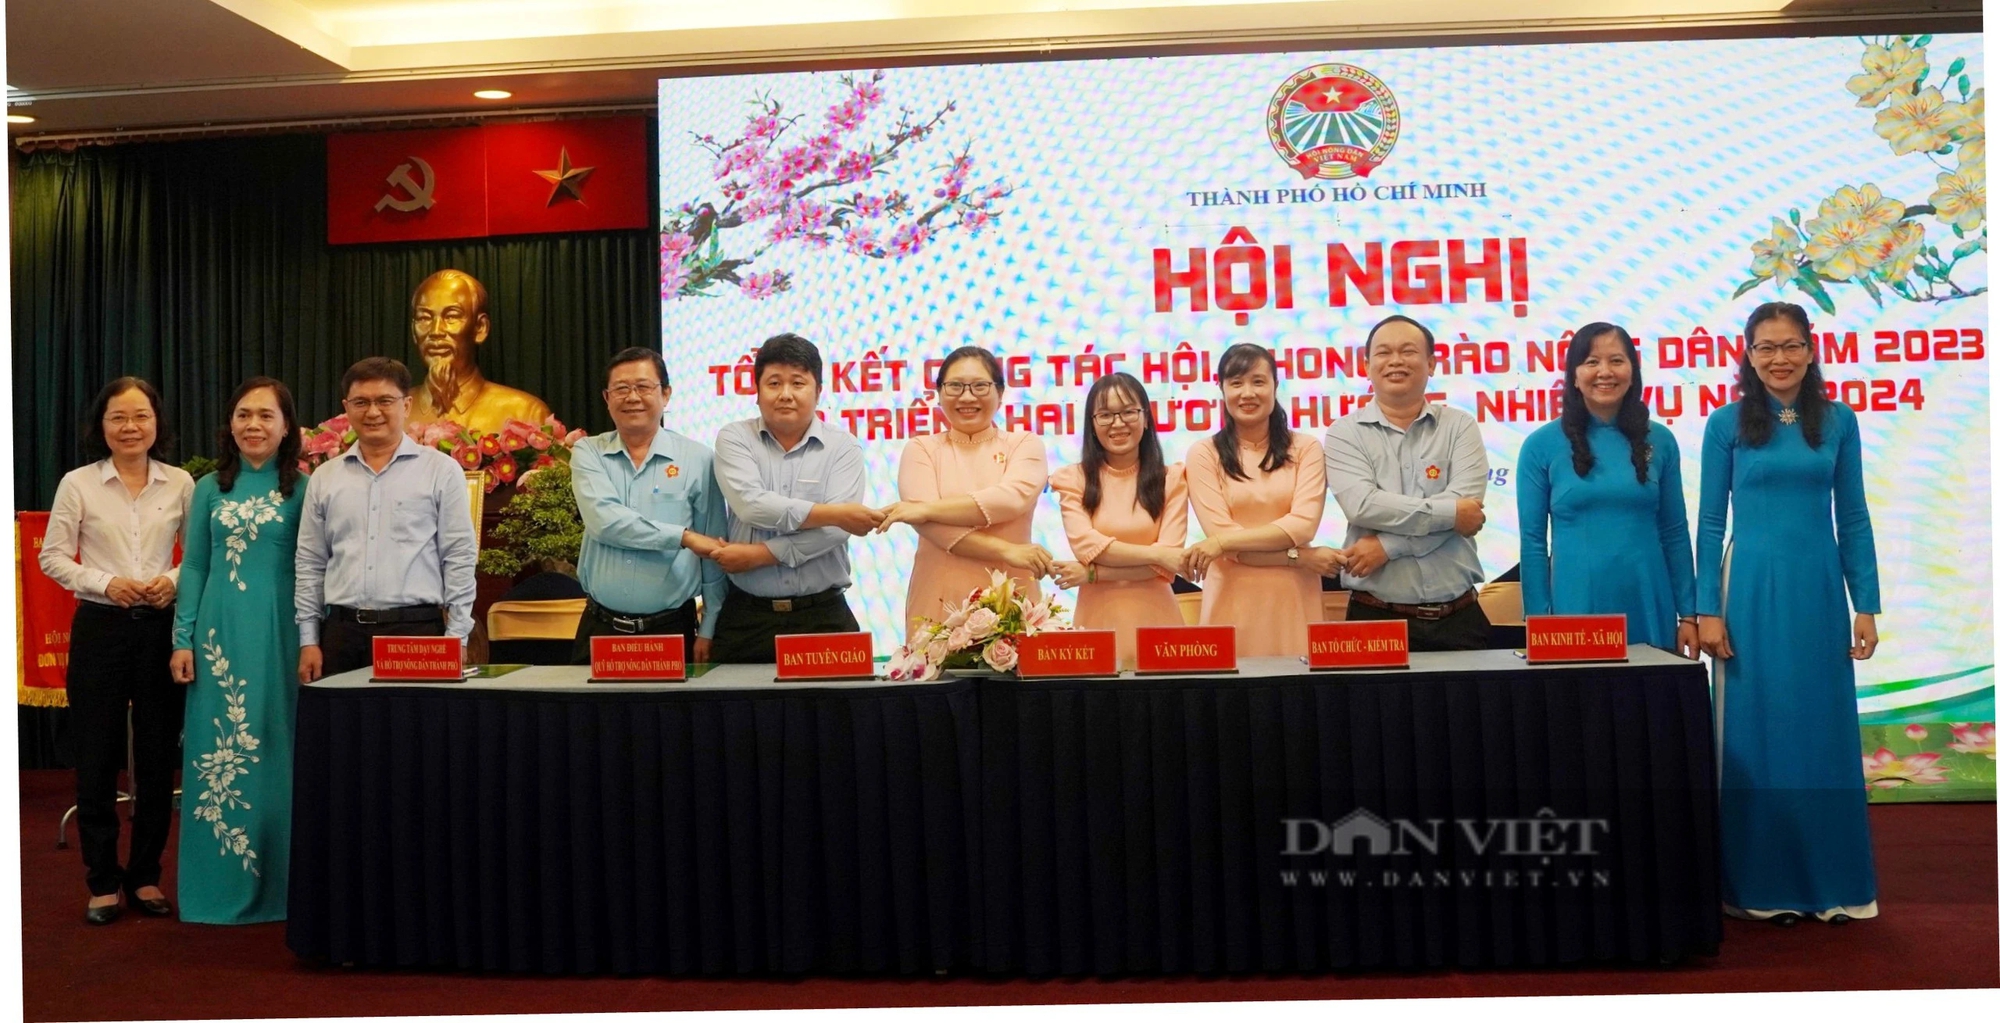 Phó Chủ tịch TƯ Hội NDVN Nguyễn Xuân Định: Hội Nông dân TP HCM đạt nhiều kết quả toàn diện- Ảnh 3.